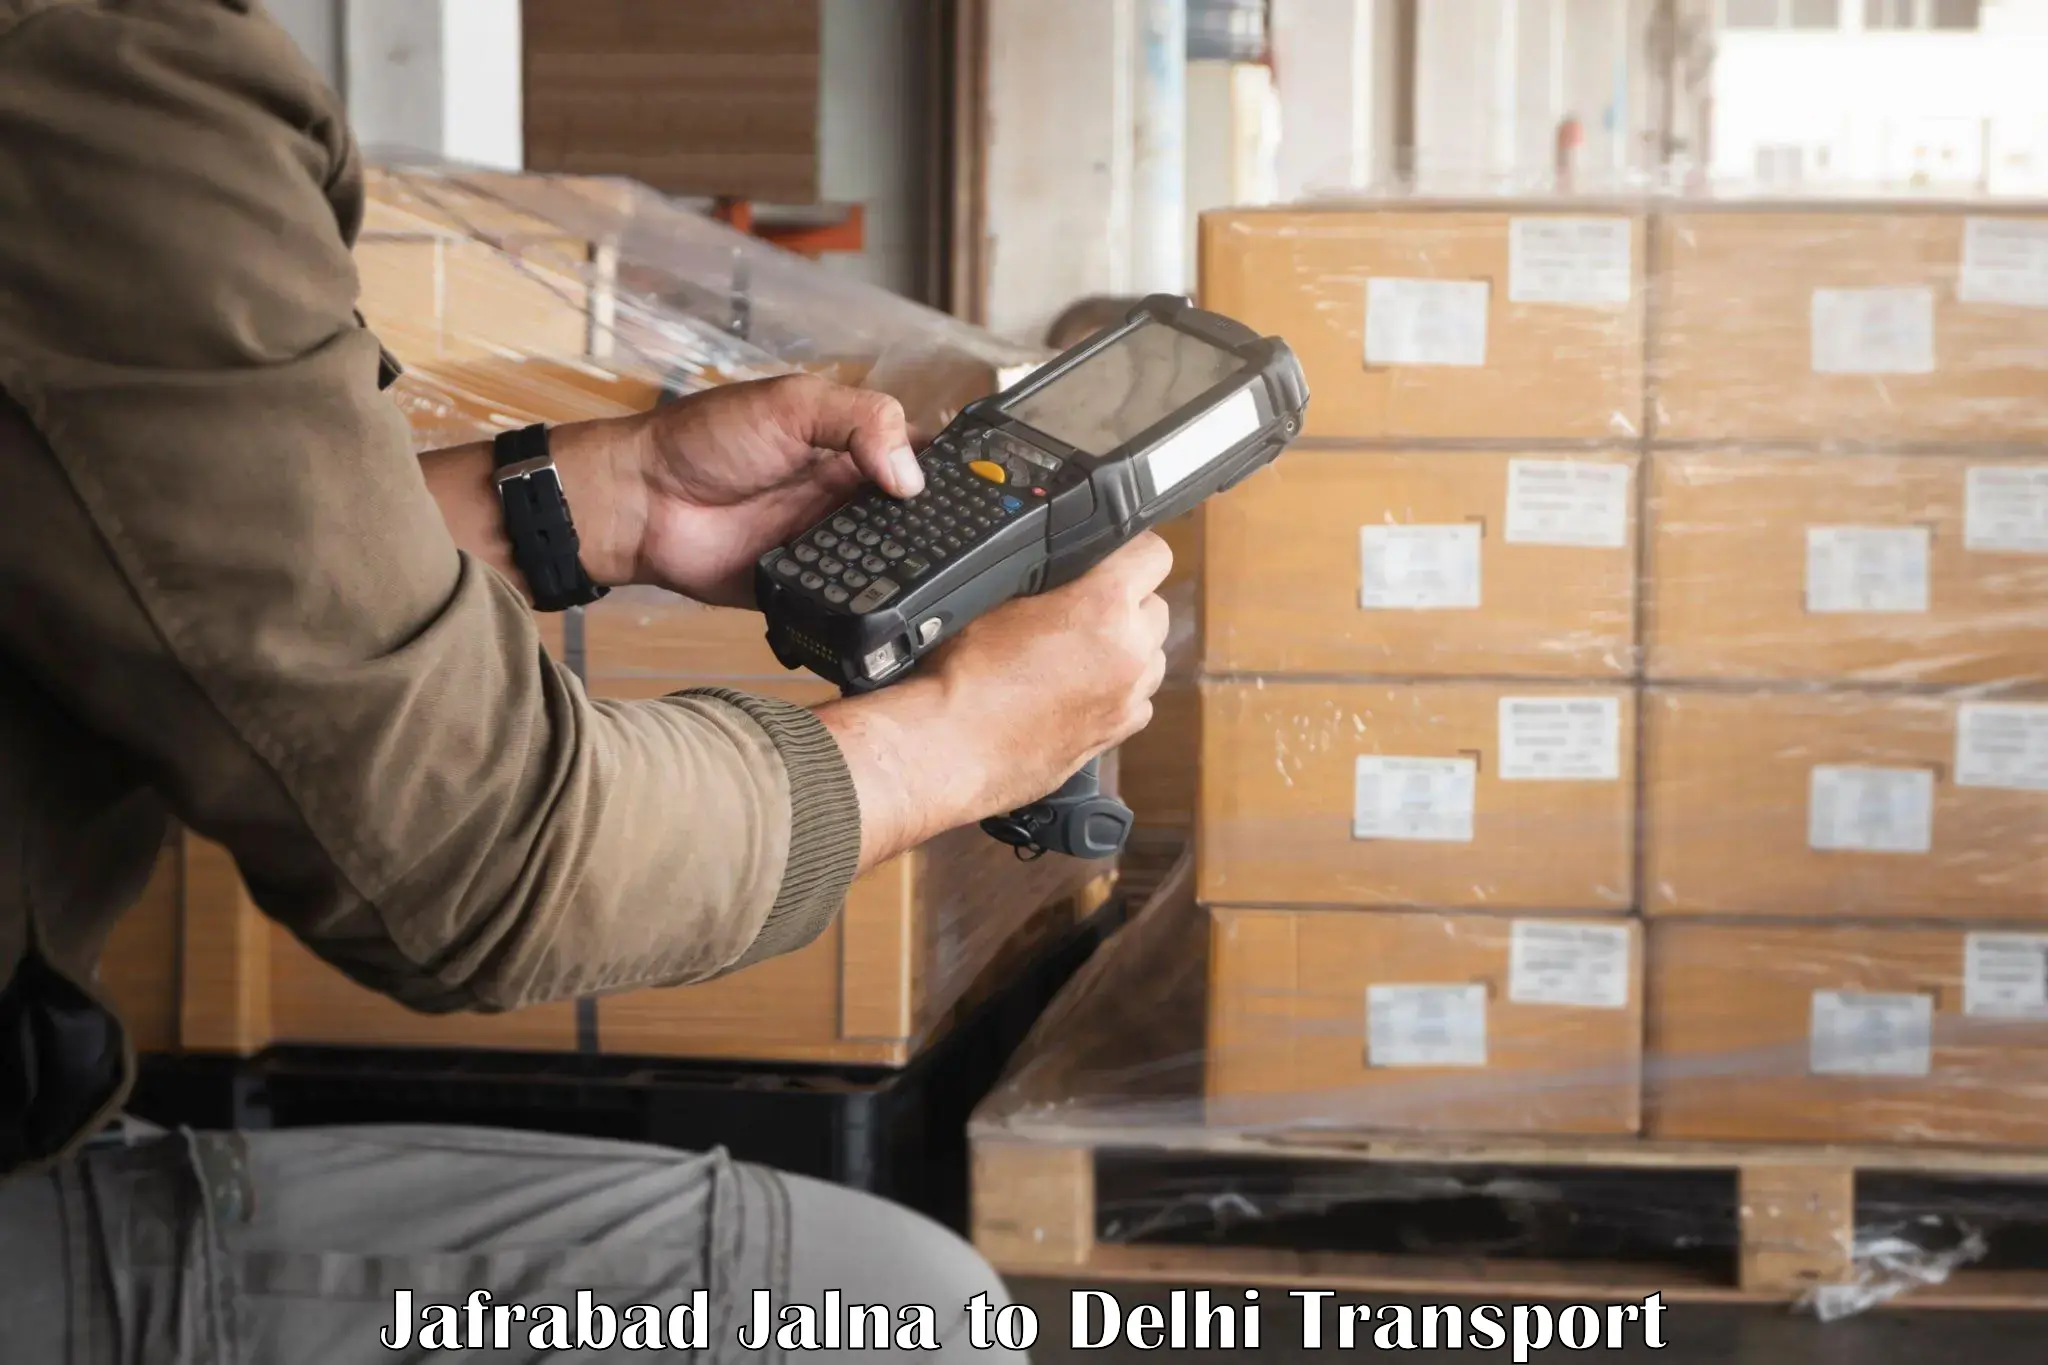 Interstate transport services Jafrabad Jalna to Delhi